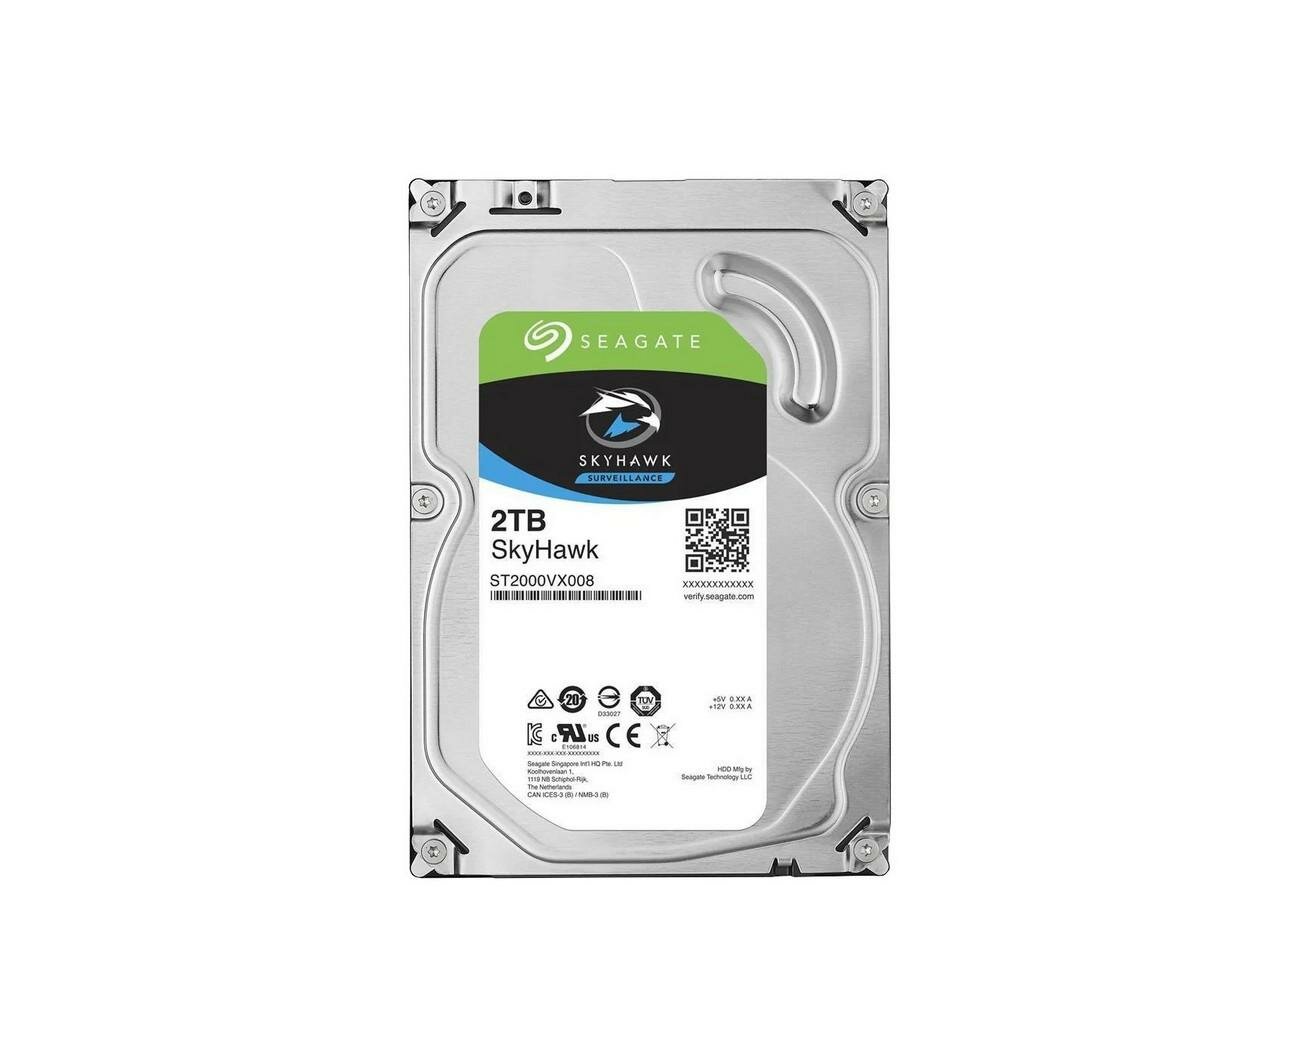 Жесткий диск для видеорегистратора Сеагате - 2tb (Скай Хавк) (S14005200). Объем 2 Тб и размером 3,5 дюйма - диск для систем видеонаблюдения